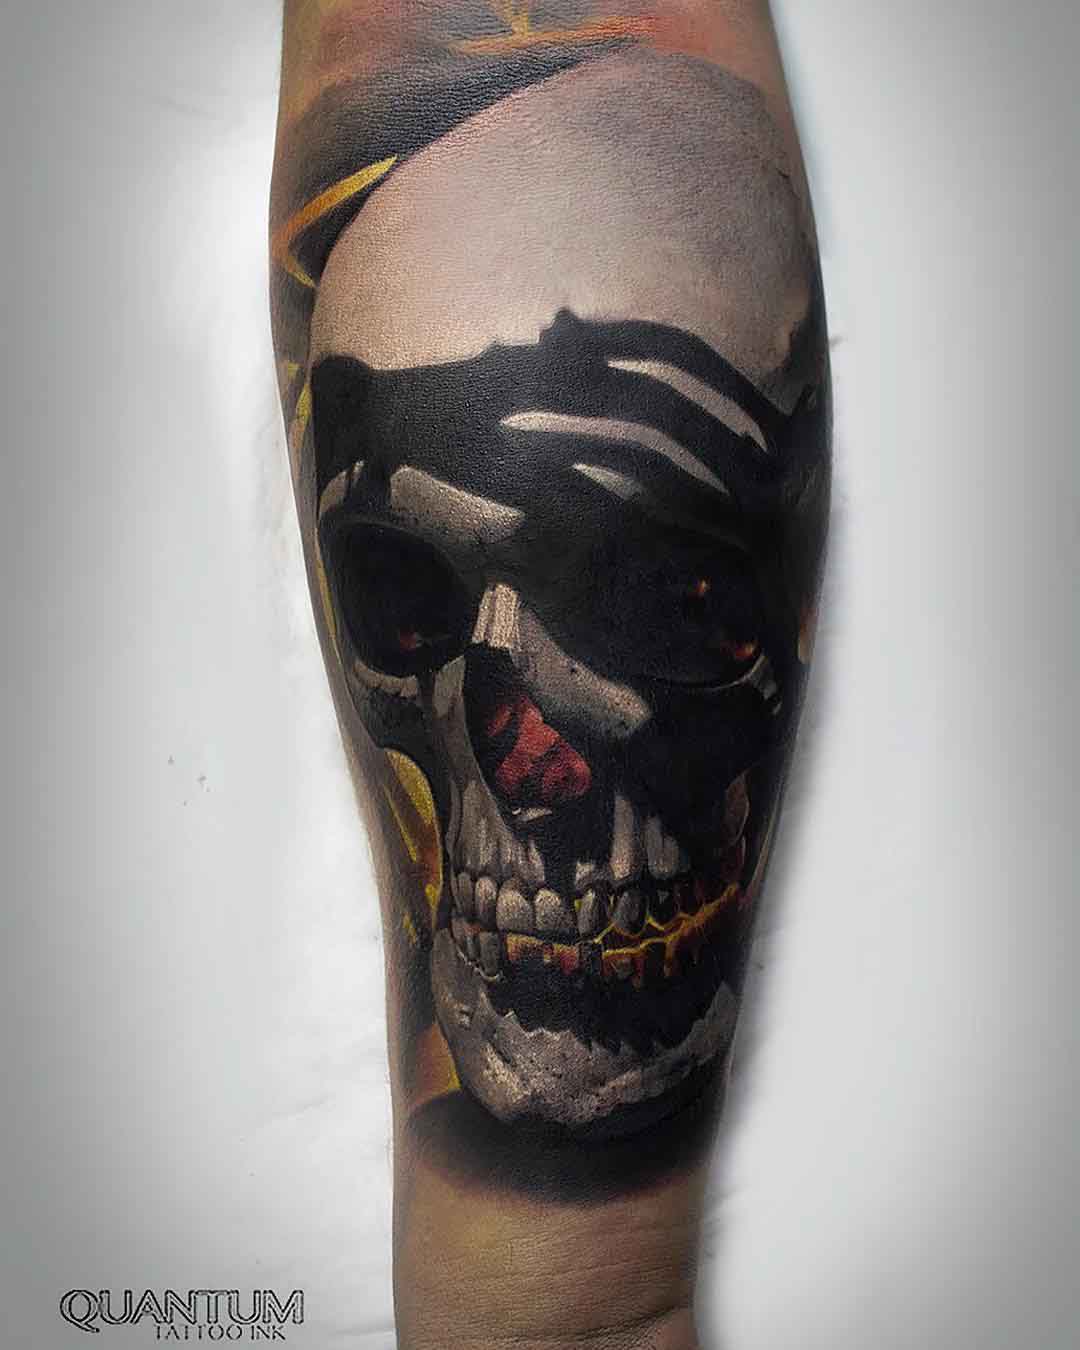 Odin God & Skull Temporary Tattoo - CrewSkull®